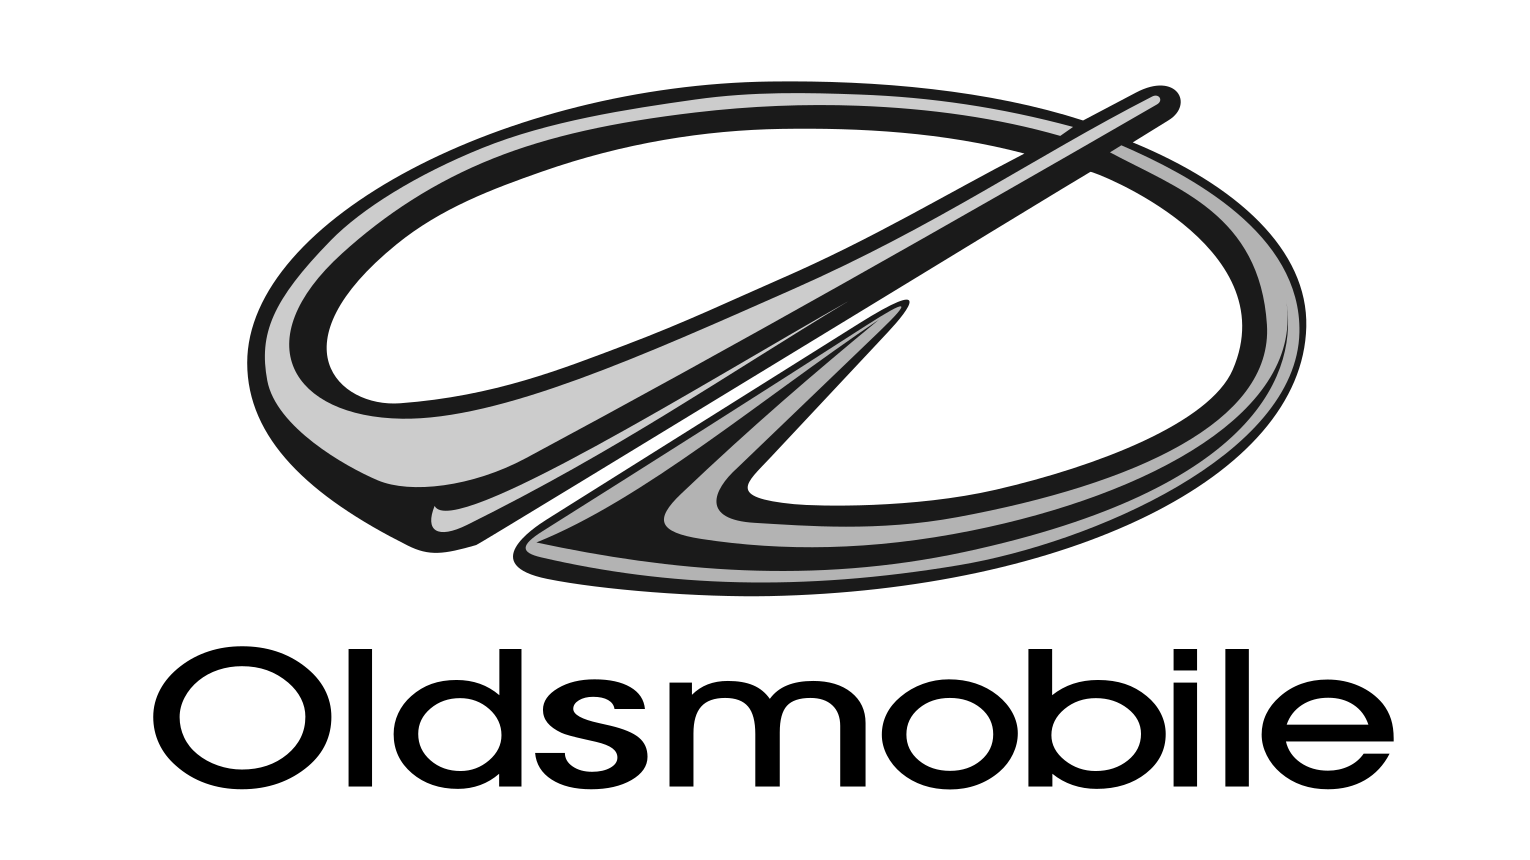 29 avril 2004 – Oldsmobile fabrique sa dernière voiture